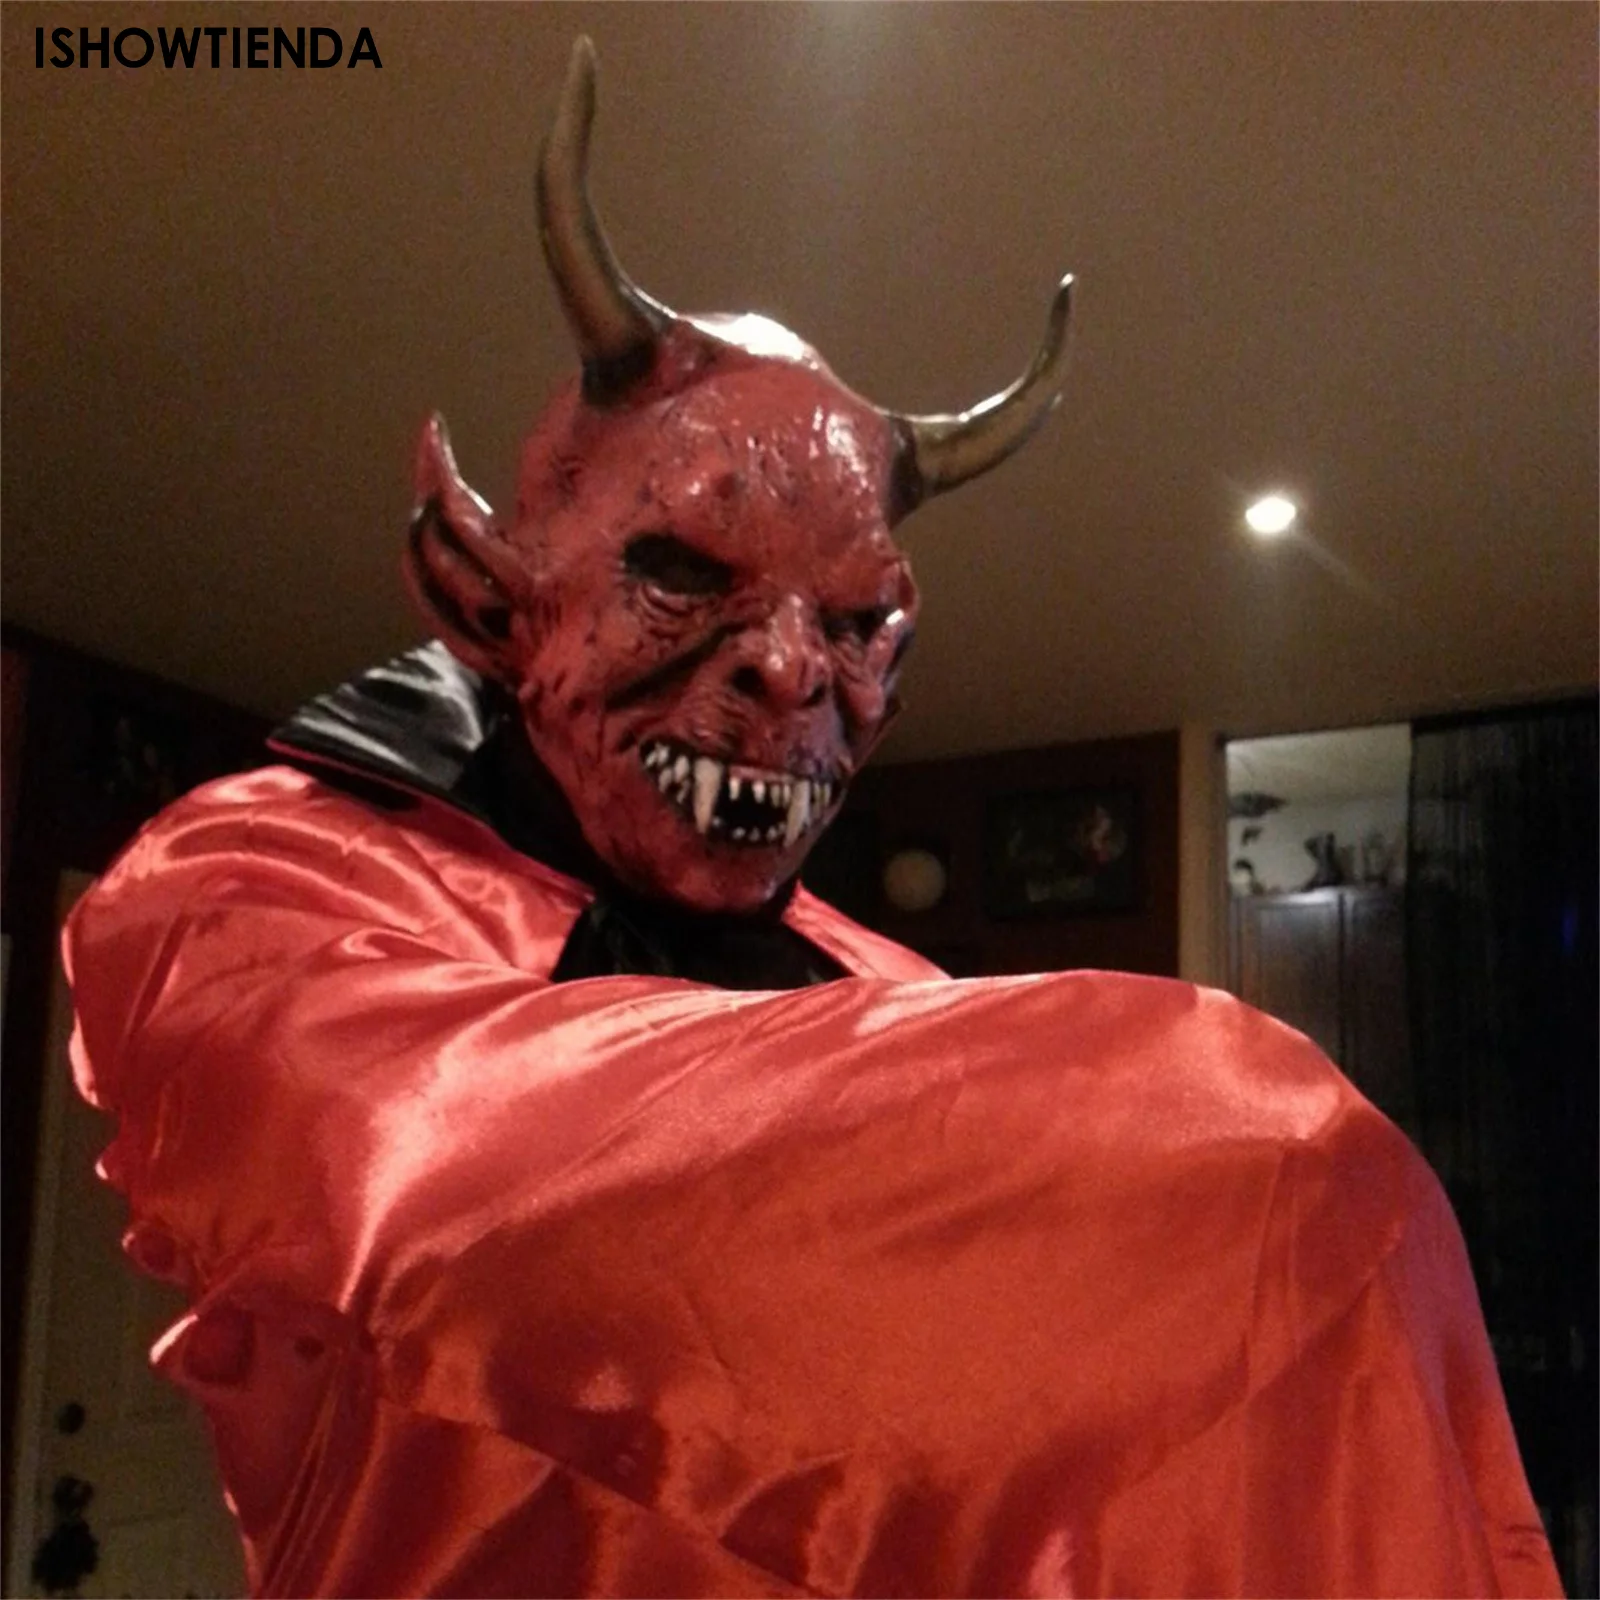 

Страшный дьявол, страшный демон, хеллфайер, чудовище, шлем для розыгрыша, сценическое представление, карнавал, Хэллоуин, реквизит